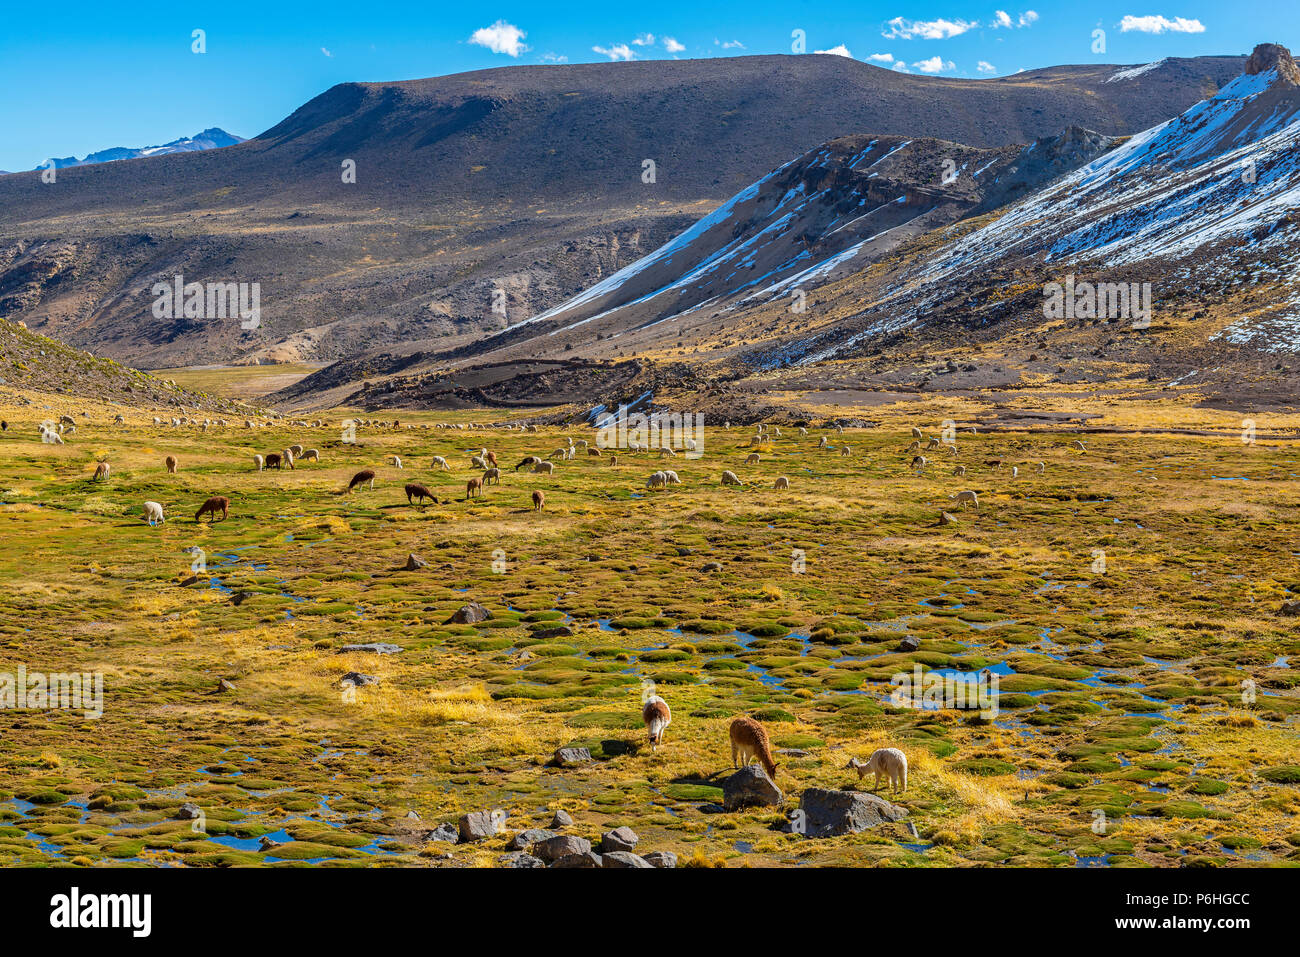 Lama e alpaca pascolano in una valle fertile all'interno della Riserva Nazionale di Salinas y Aguada Blanca vicino al Canyon del Colca nelle Ande del Perù. Foto Stock